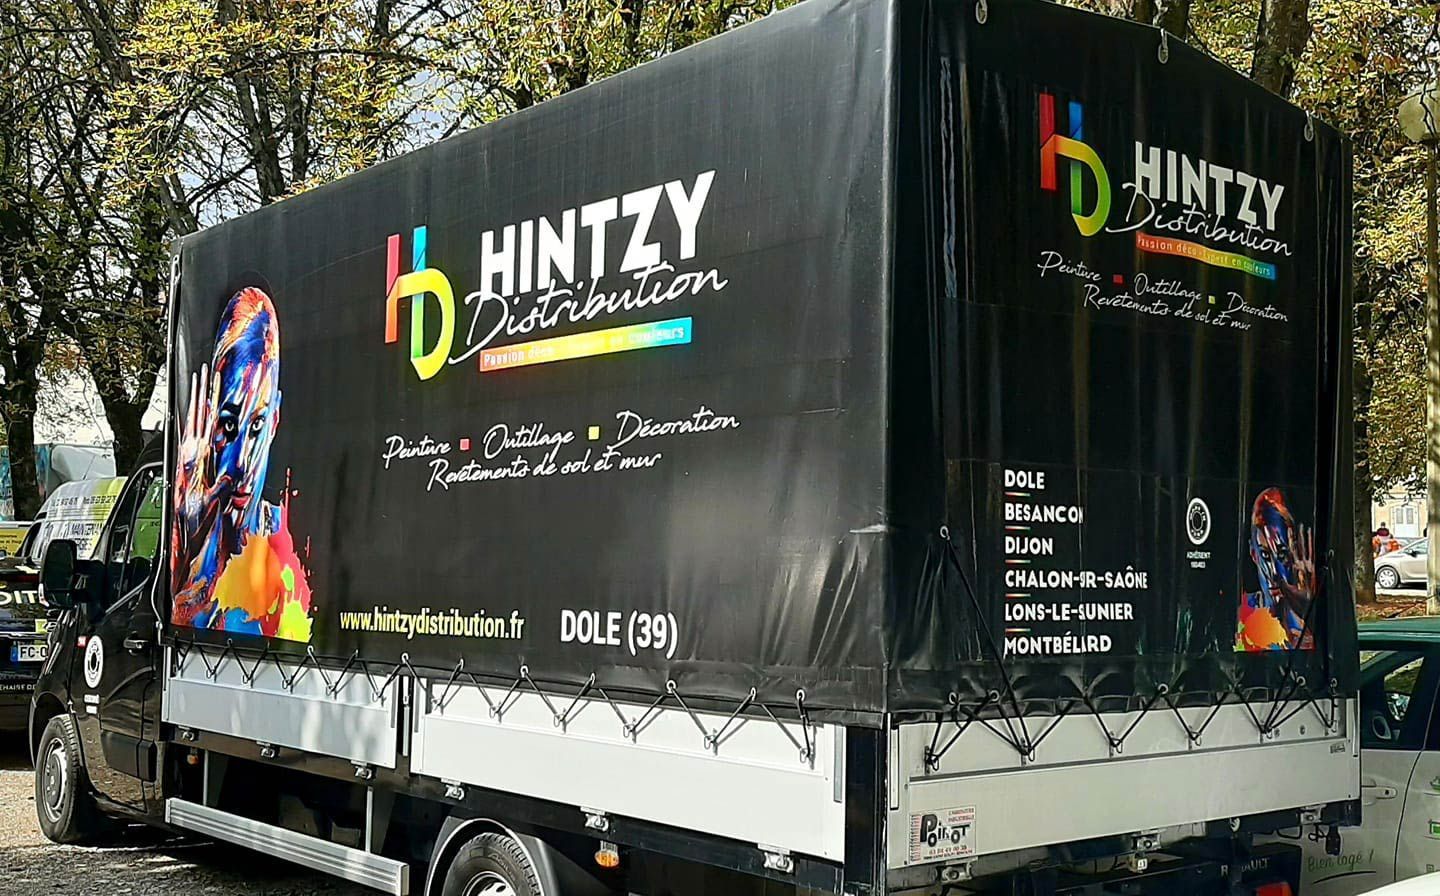 Le camion à l'effigie de l'enseigne Hintzy Distribution